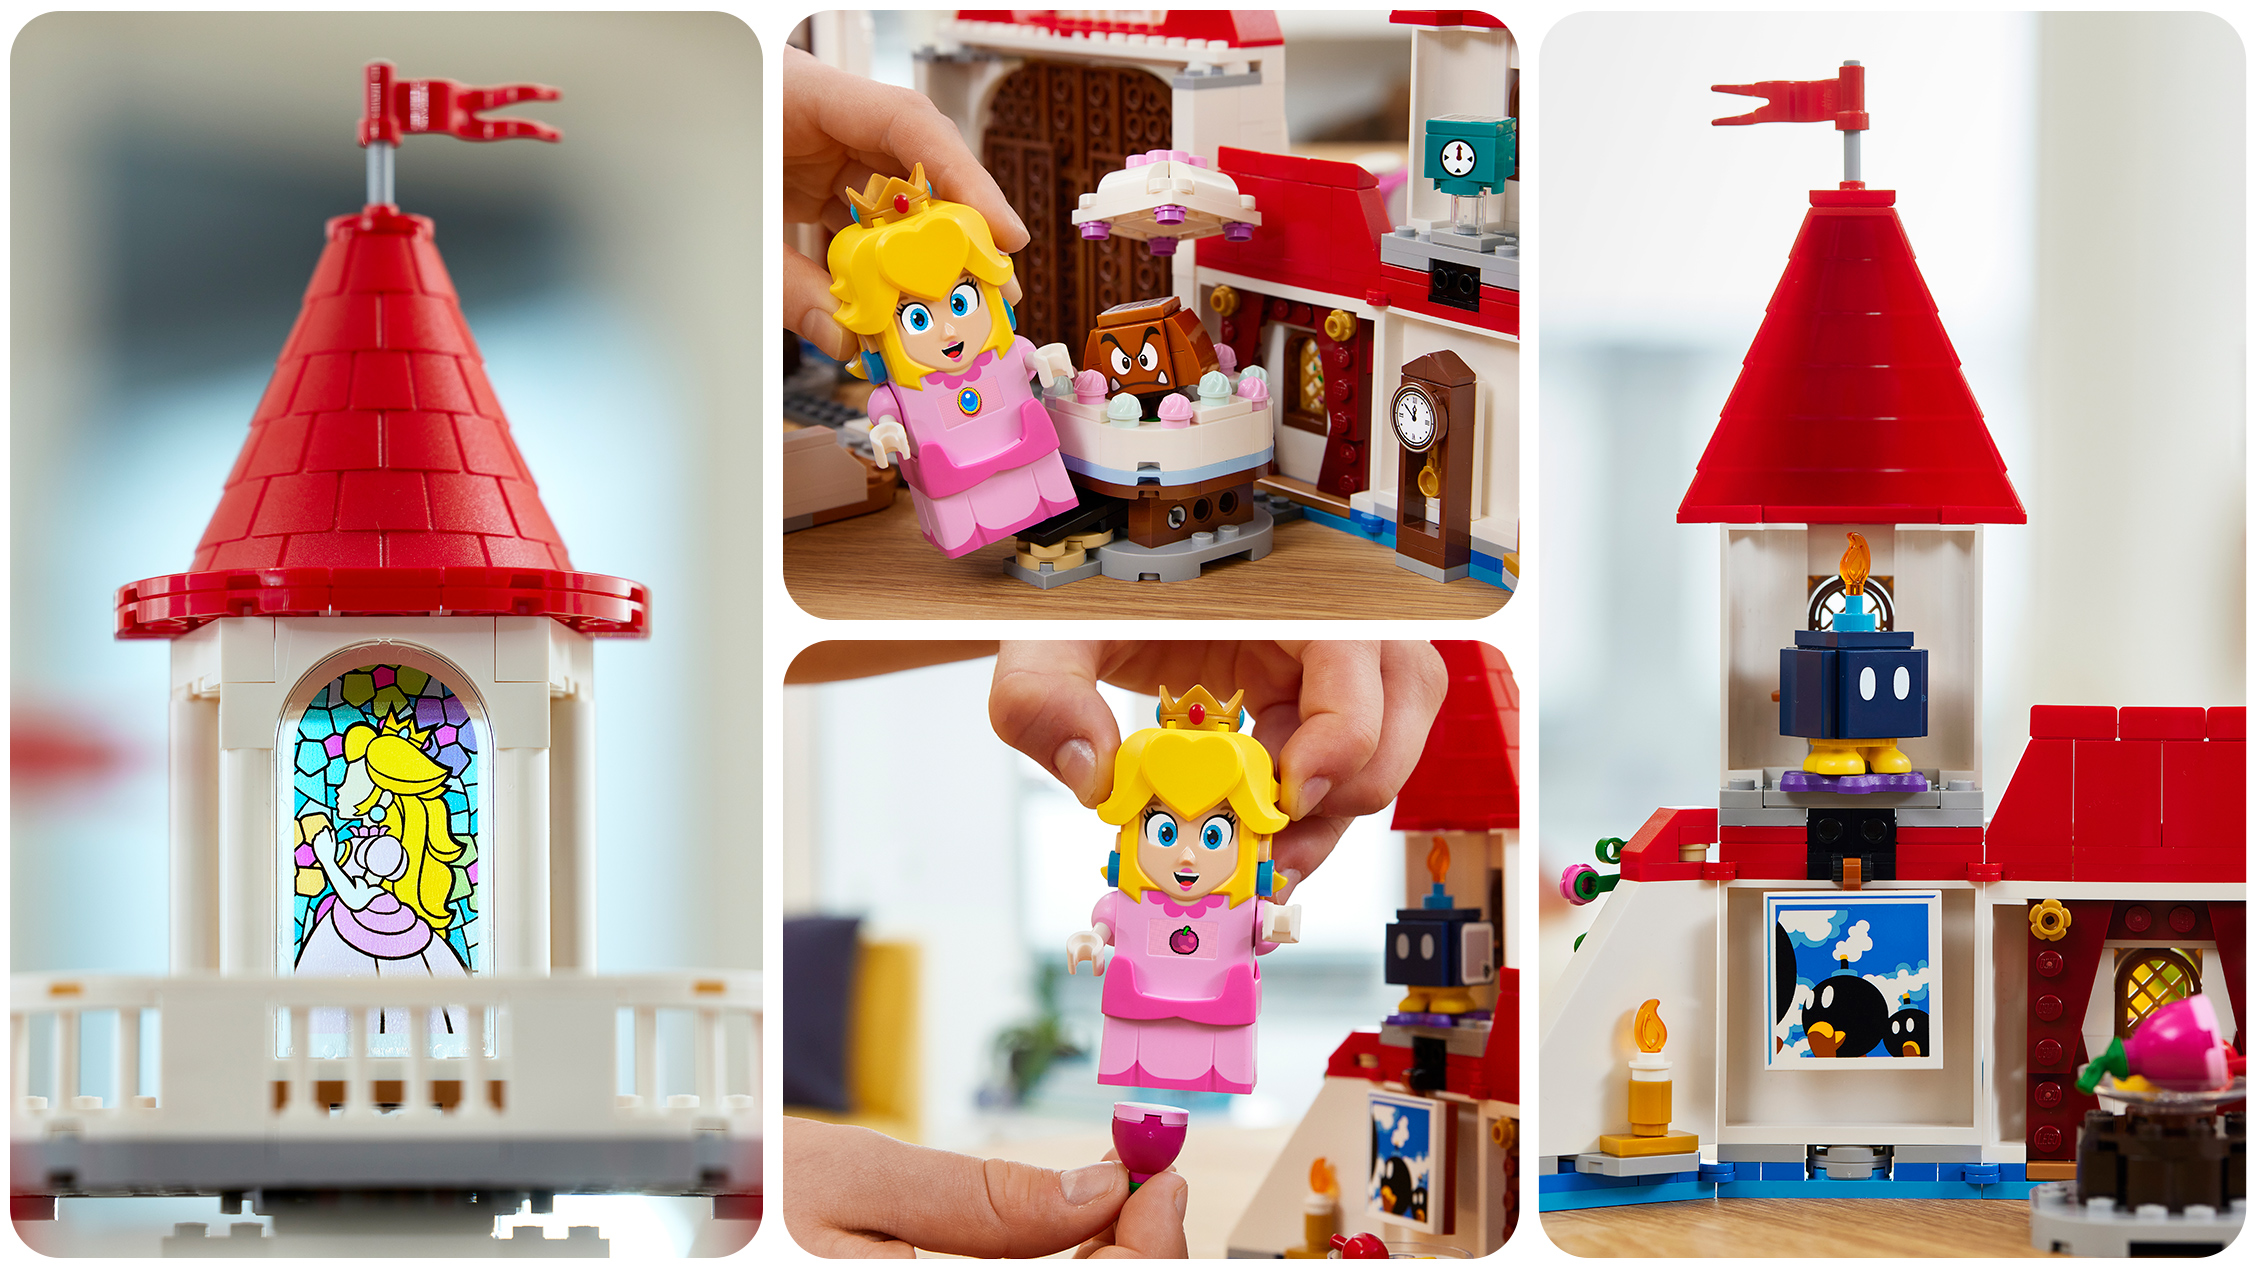 Il Castello di Peach batte i Lego, è il gioco più amato dai bimbi - Tempo  Libero 